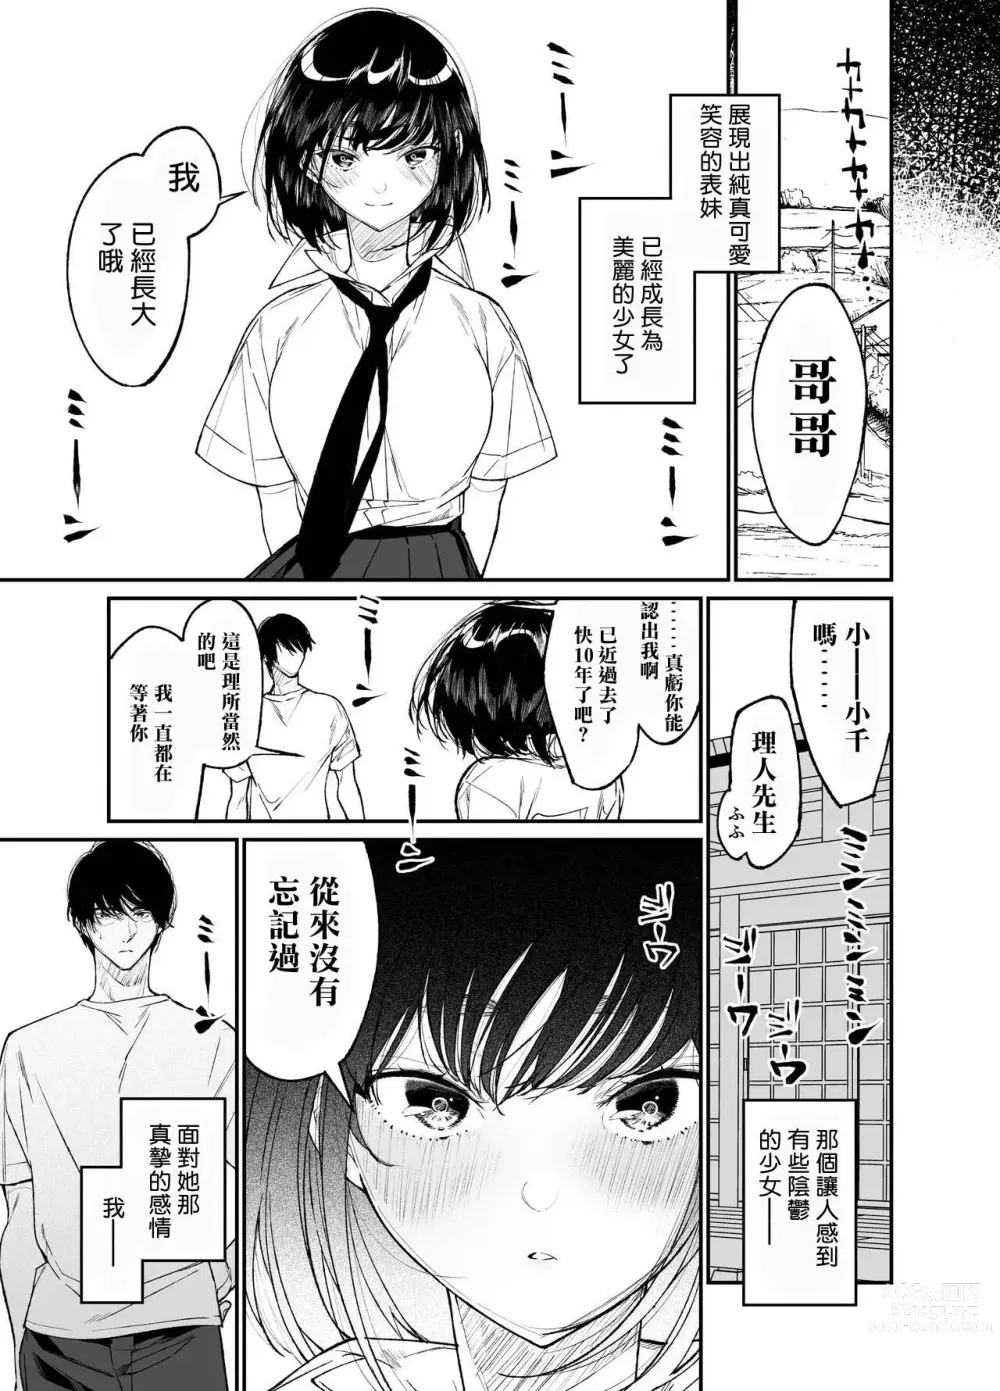 Page 7 of doujinshi Natsu, Shoujo wa Tonde, Hi ni Iru.